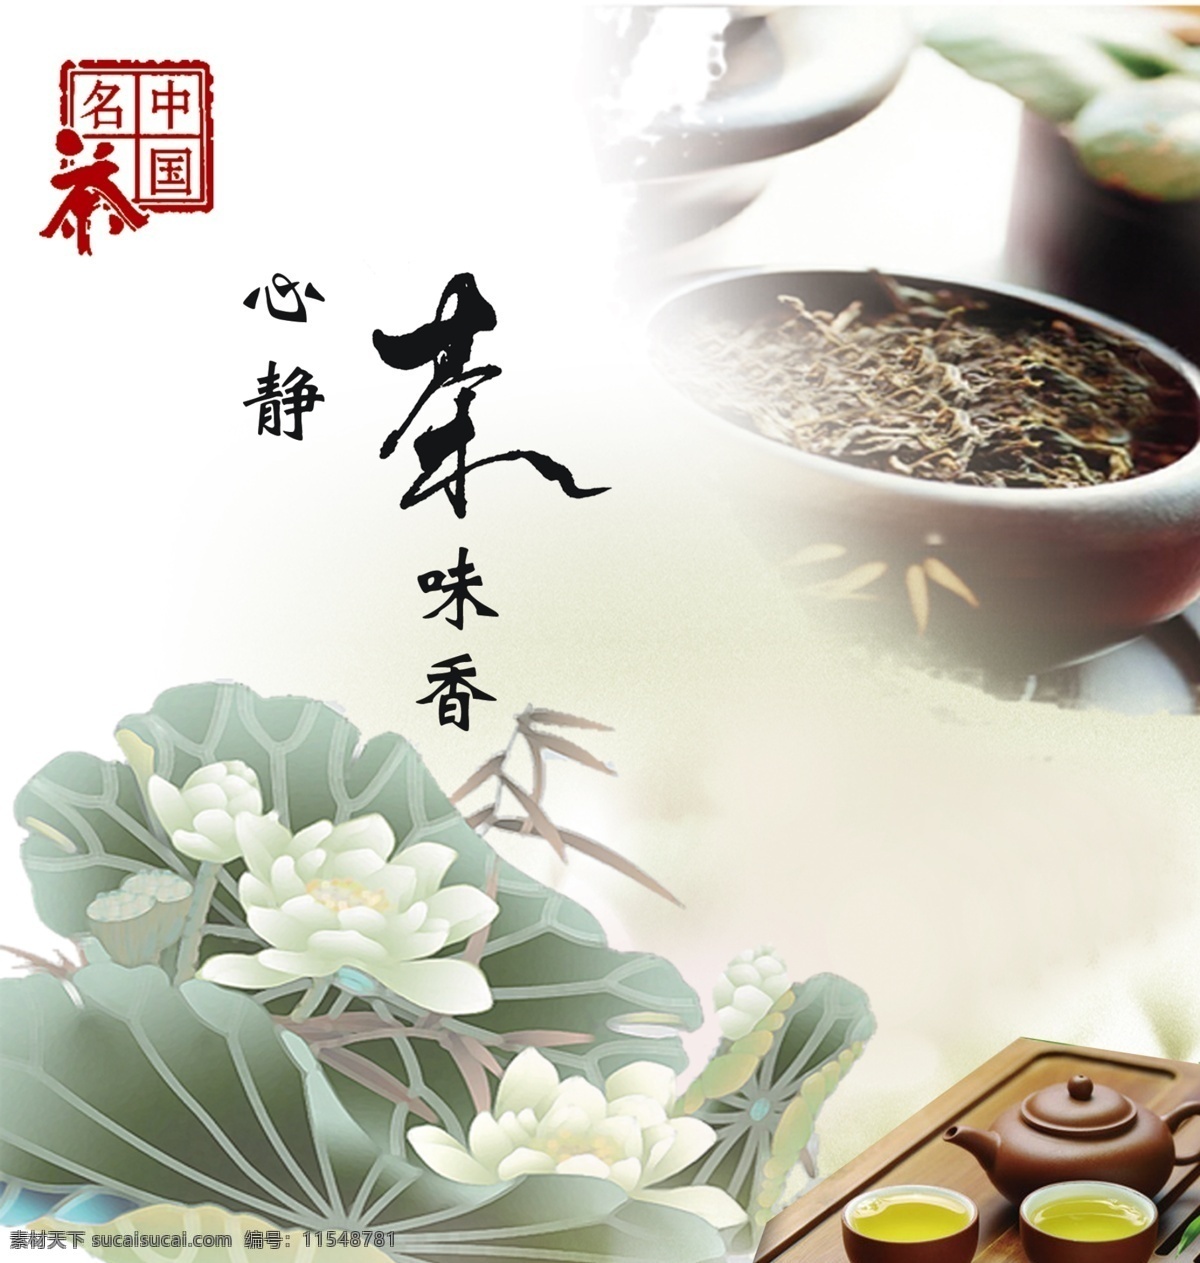 茶文化 中国 风 海报 中国风海报 茶叶海报 荷花 工笔画 印章 psd素材 茶文化海报 茶叶文化 白色